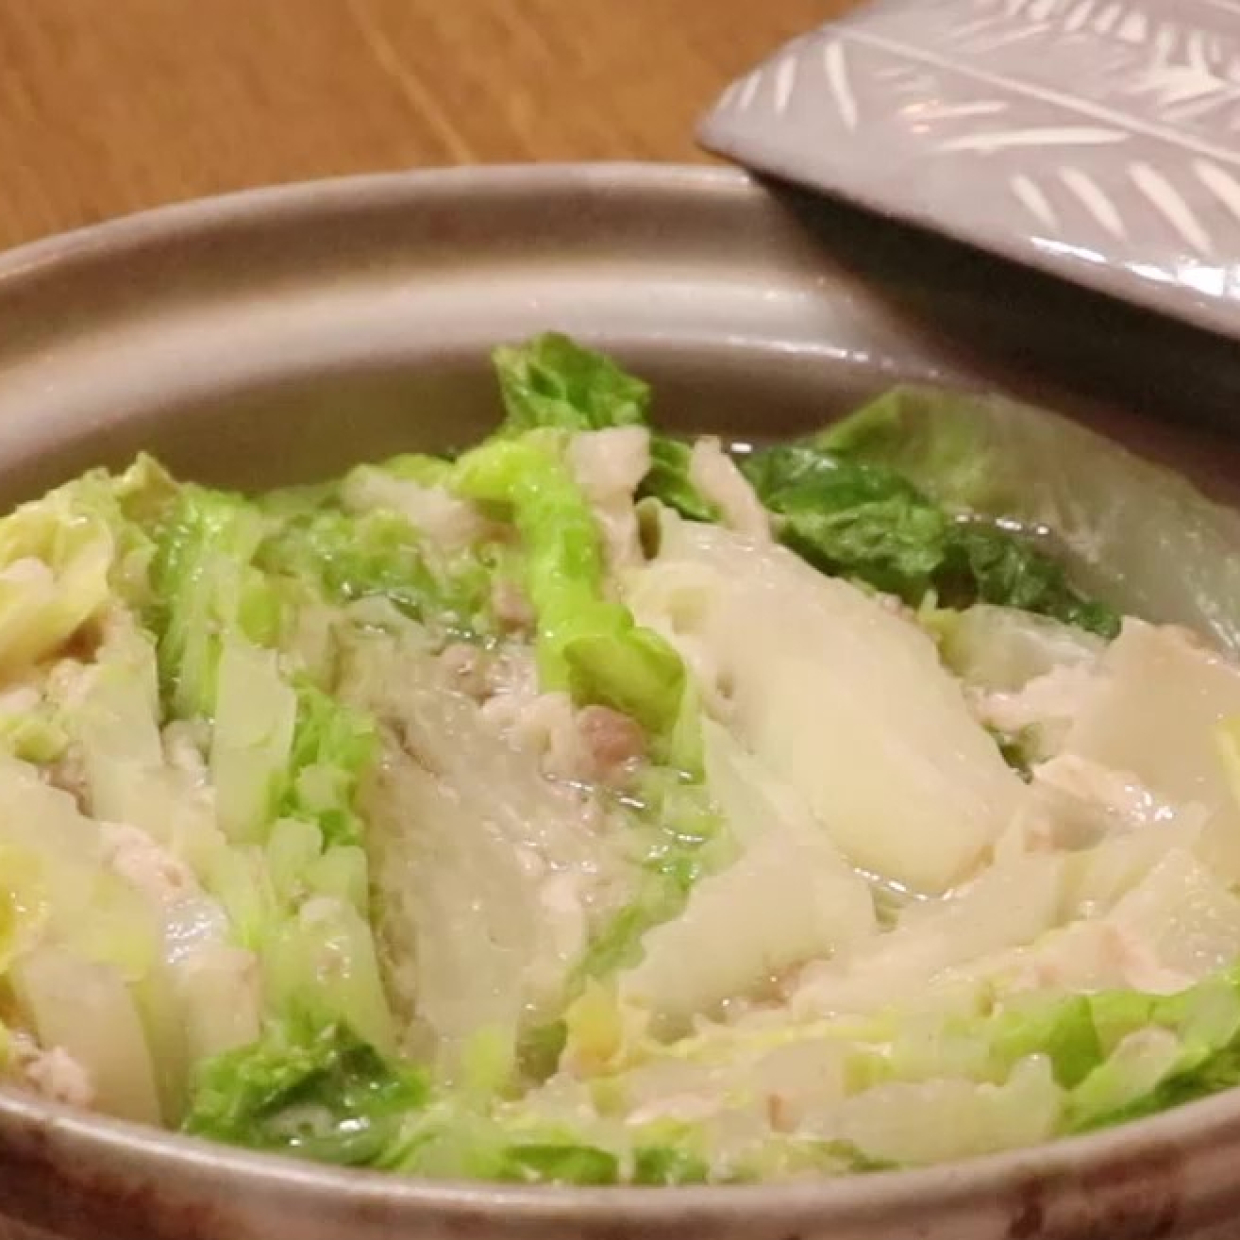  【ビジュアル系お鍋】白菜とバラ肉の「ミルフィーユ鍋」の正しい作り方！今さら聞けないおさらいレシピ 